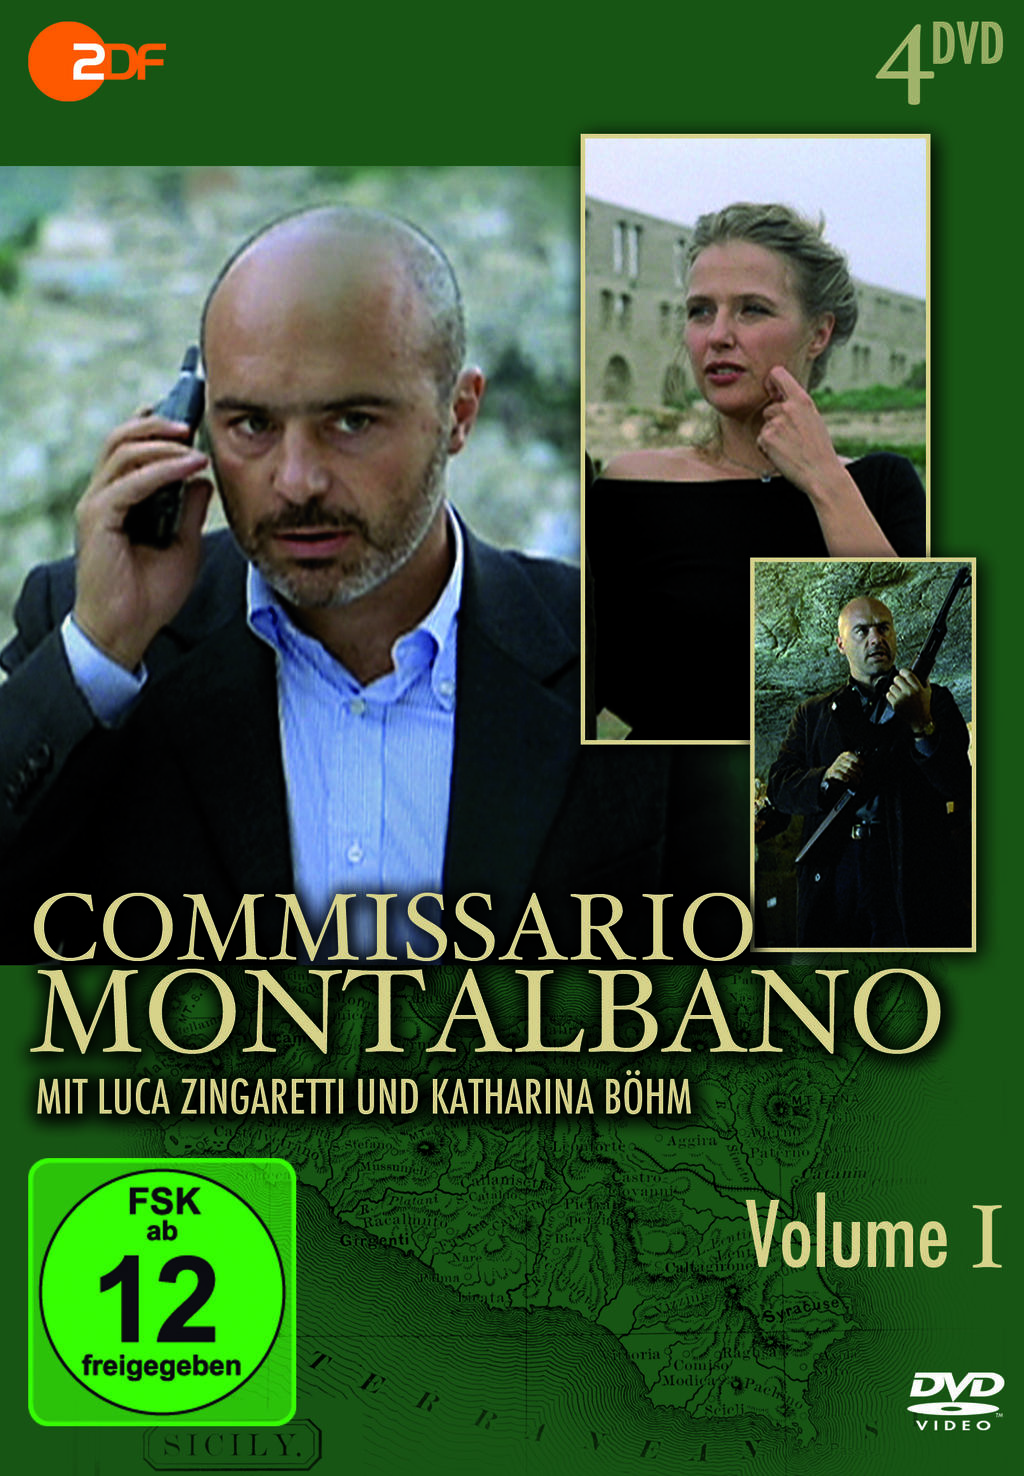 Commissario Montalbano: Il gioco delle tre carte | Season 6 | Episode 2